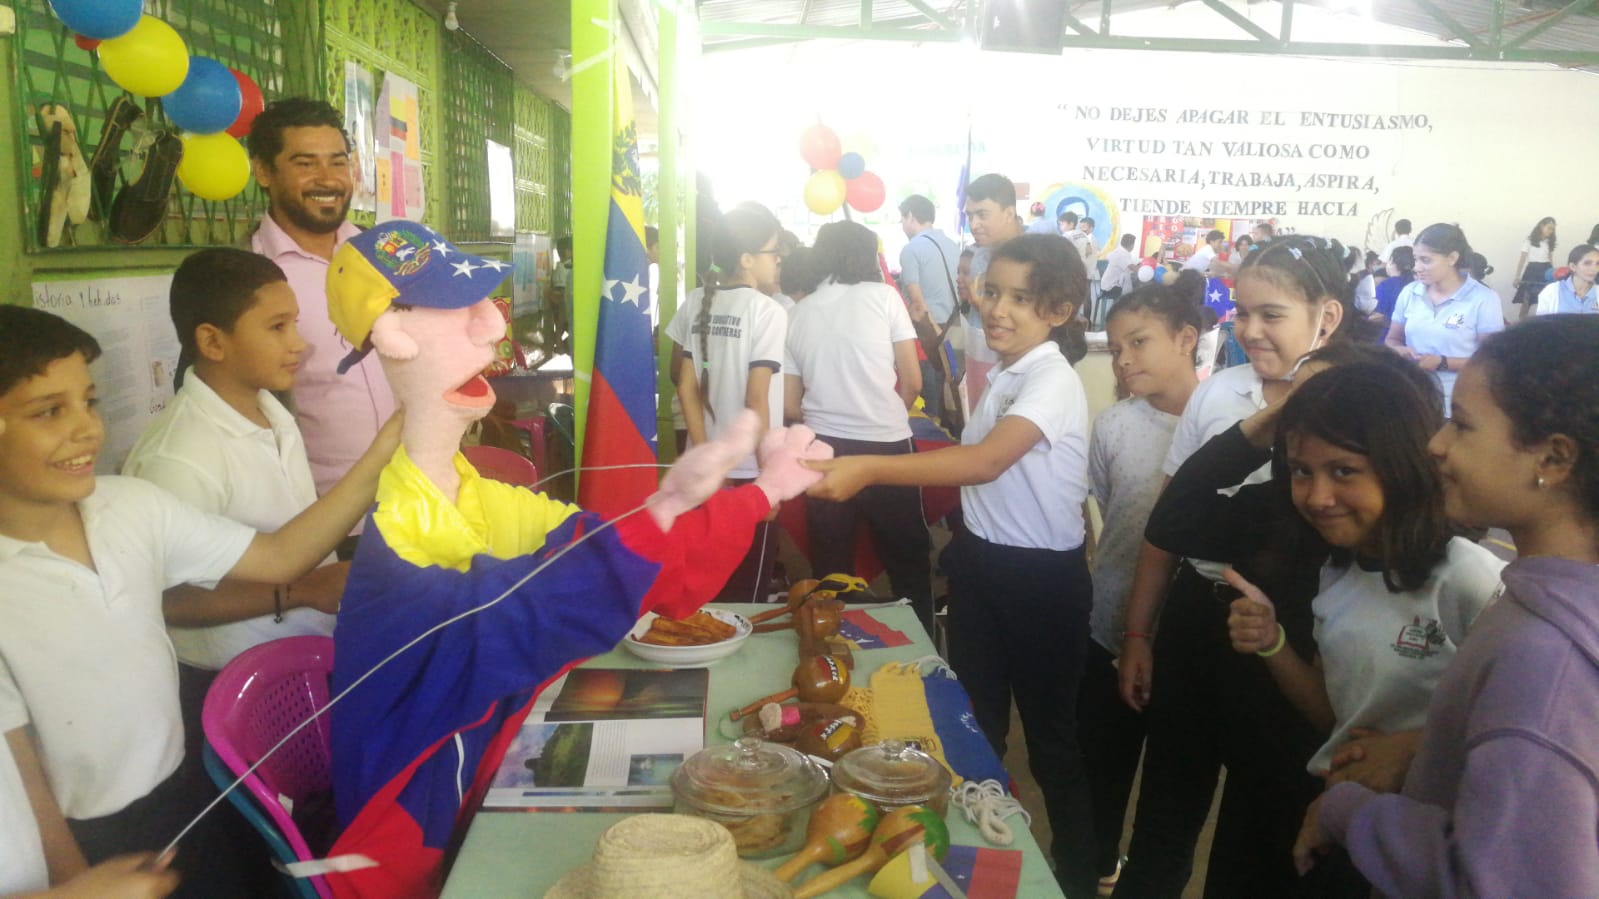 Venezuela participa en jornada científica escolar organizada en Nicaragua